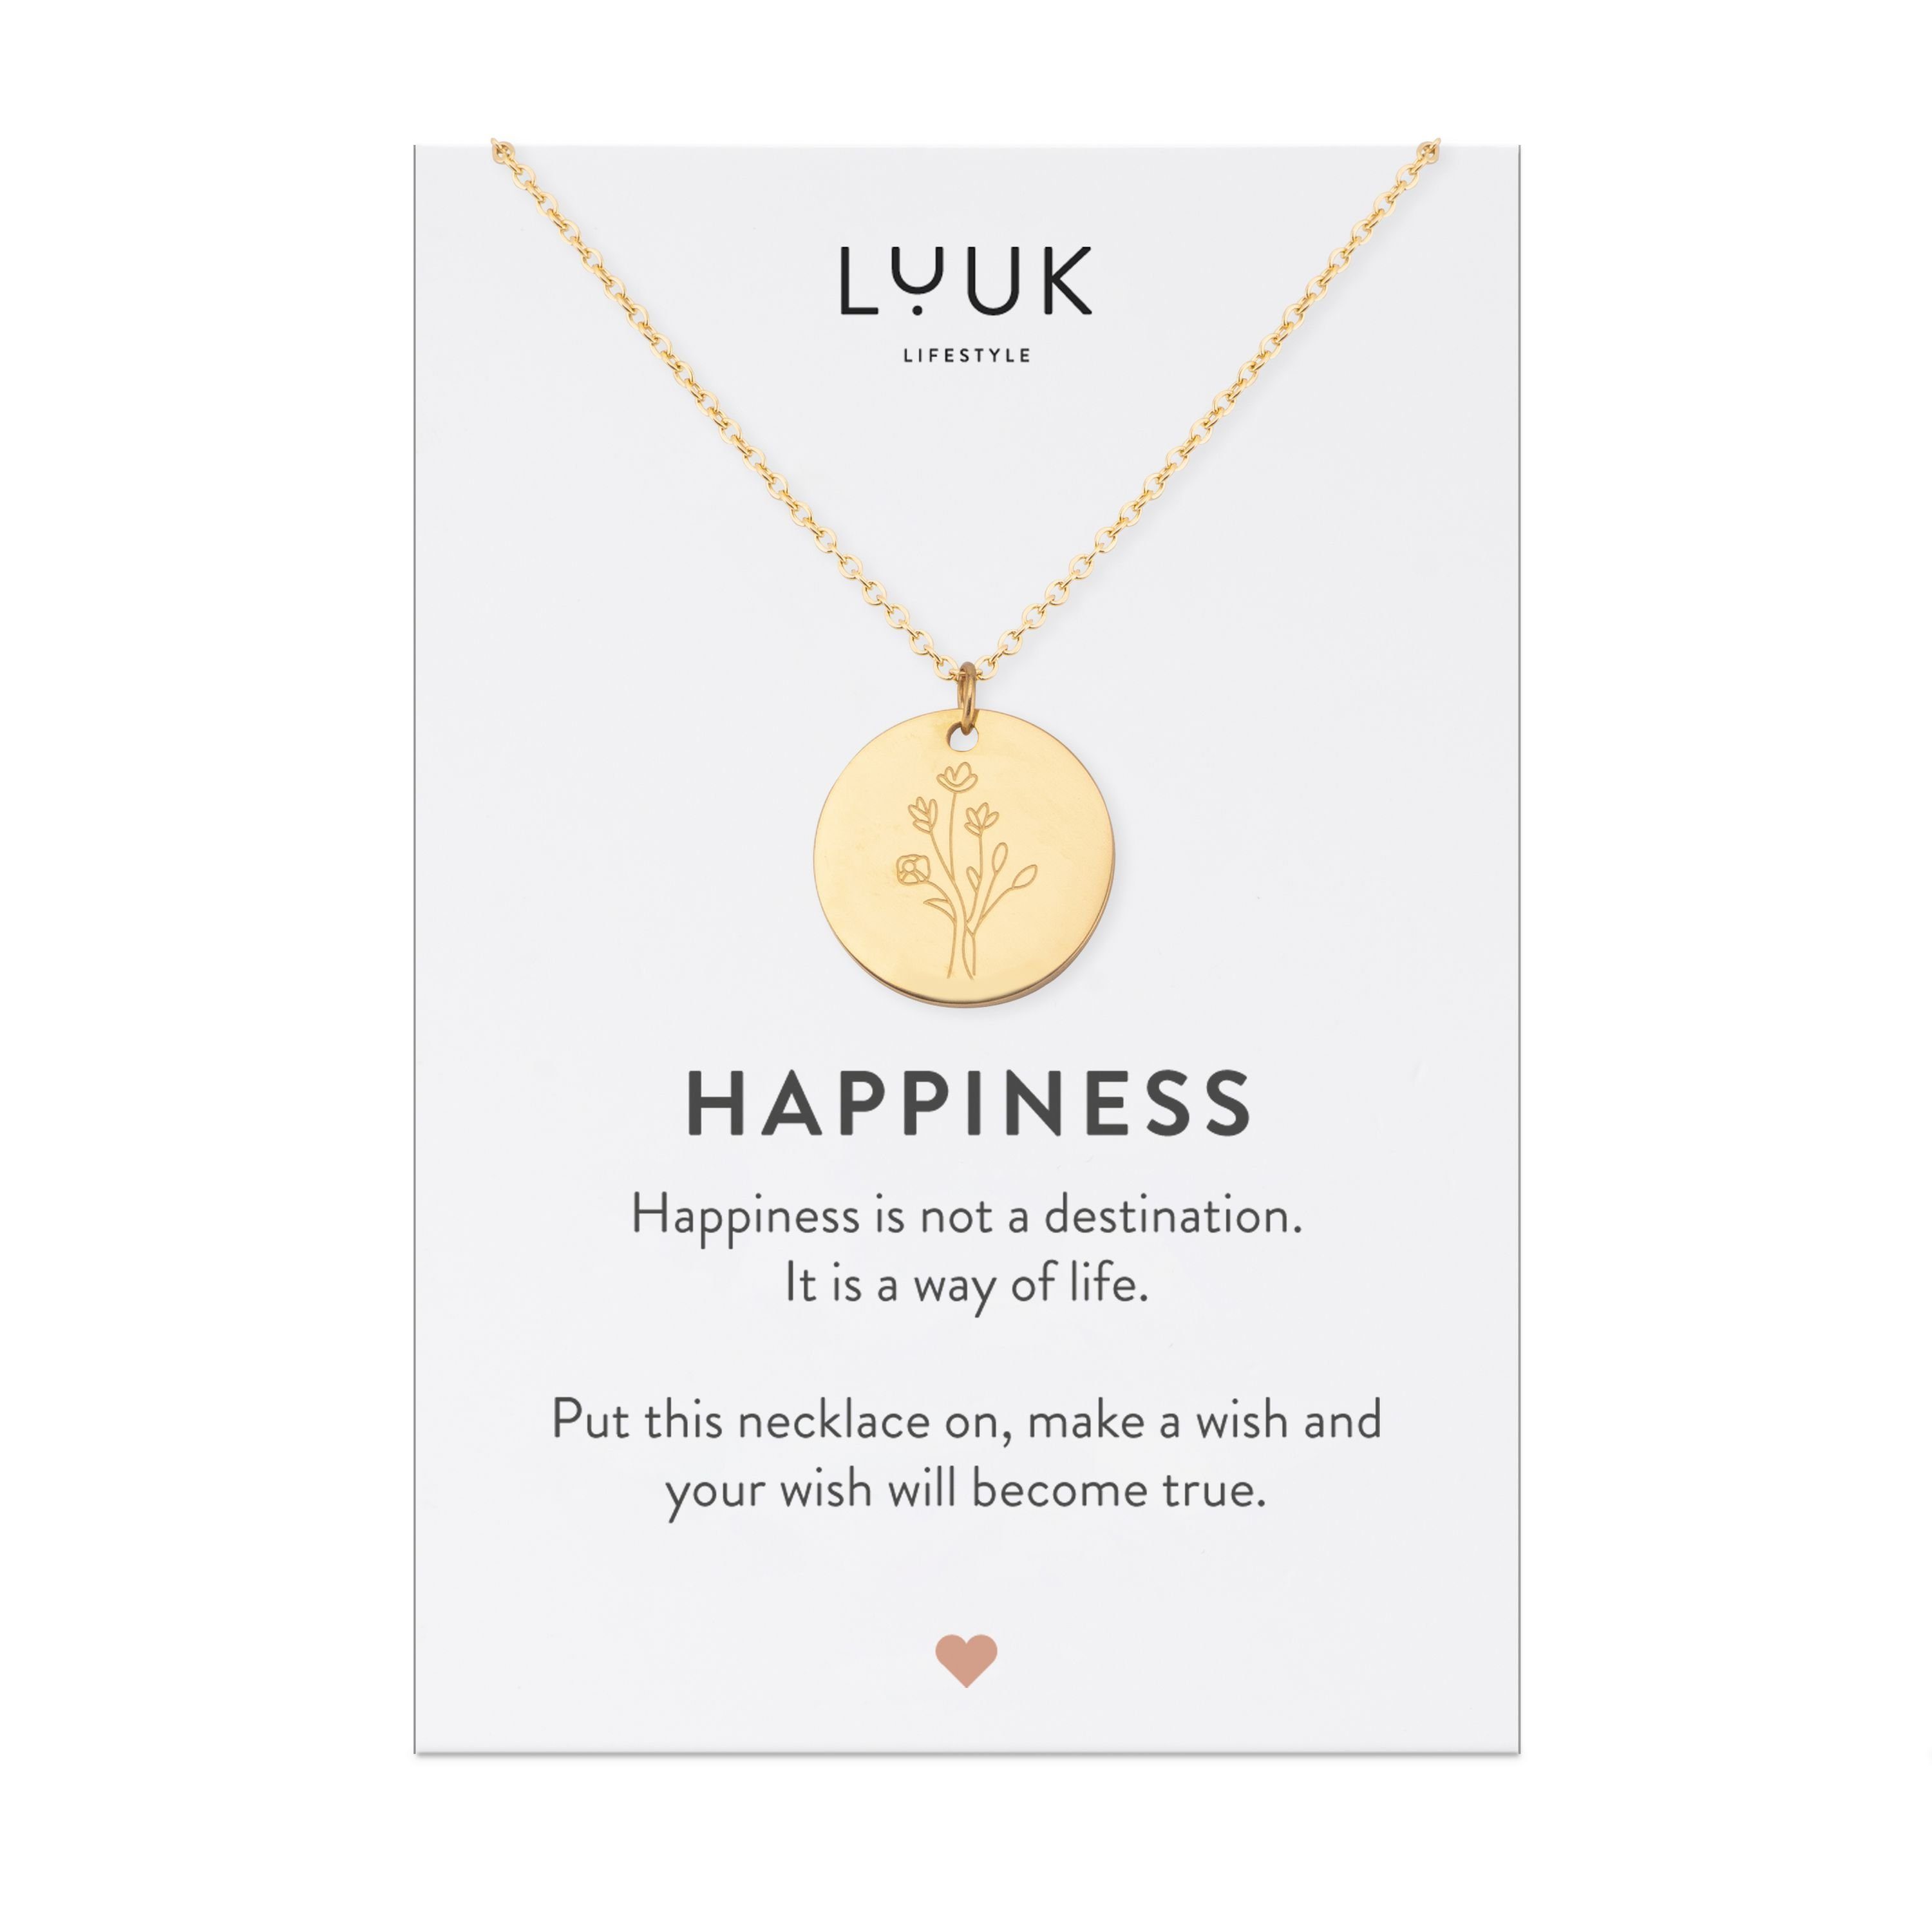 LUUK LIFESTYLE Kette mit Anhänger HAPPINESS Gold Edelstahl Geschenkkarte, hochwertiger Blume